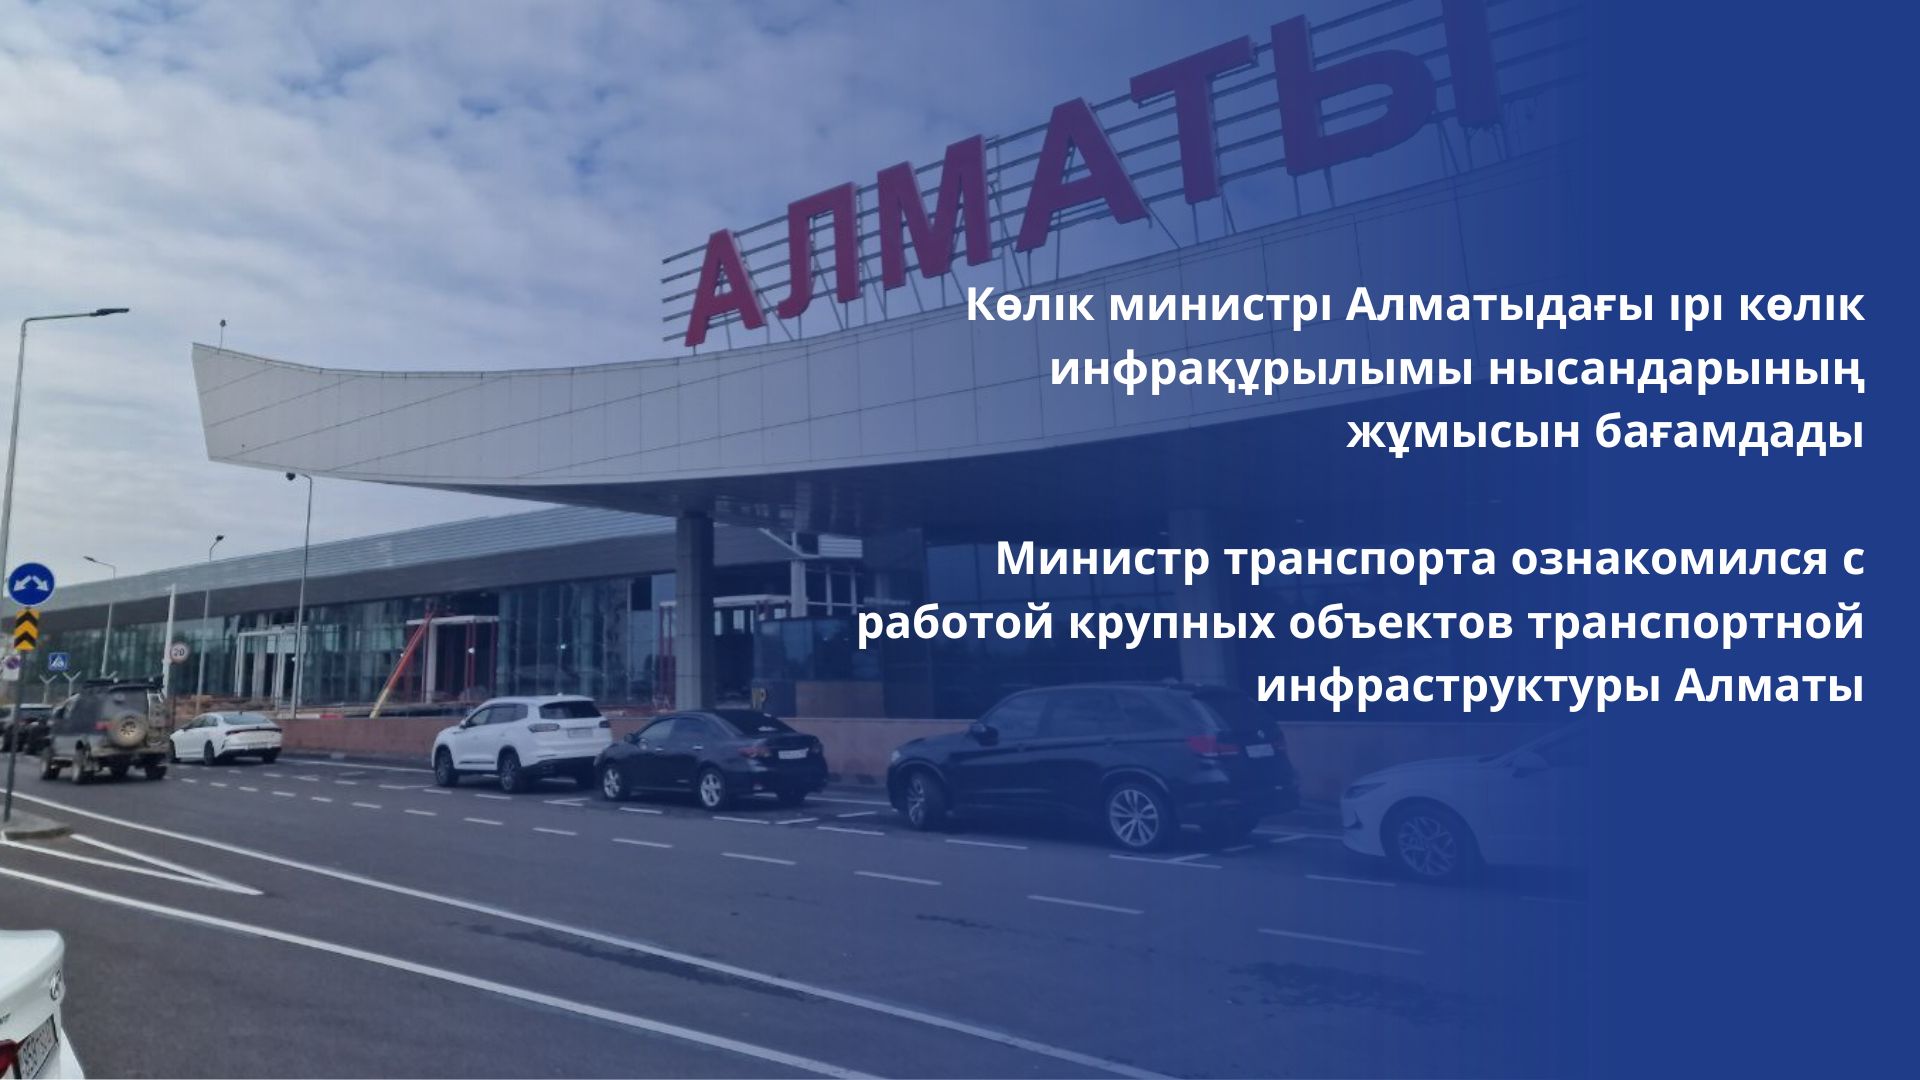 Министр транспорта ознакомился с работой крупных объектов транспортной инфраструктуры Алматы